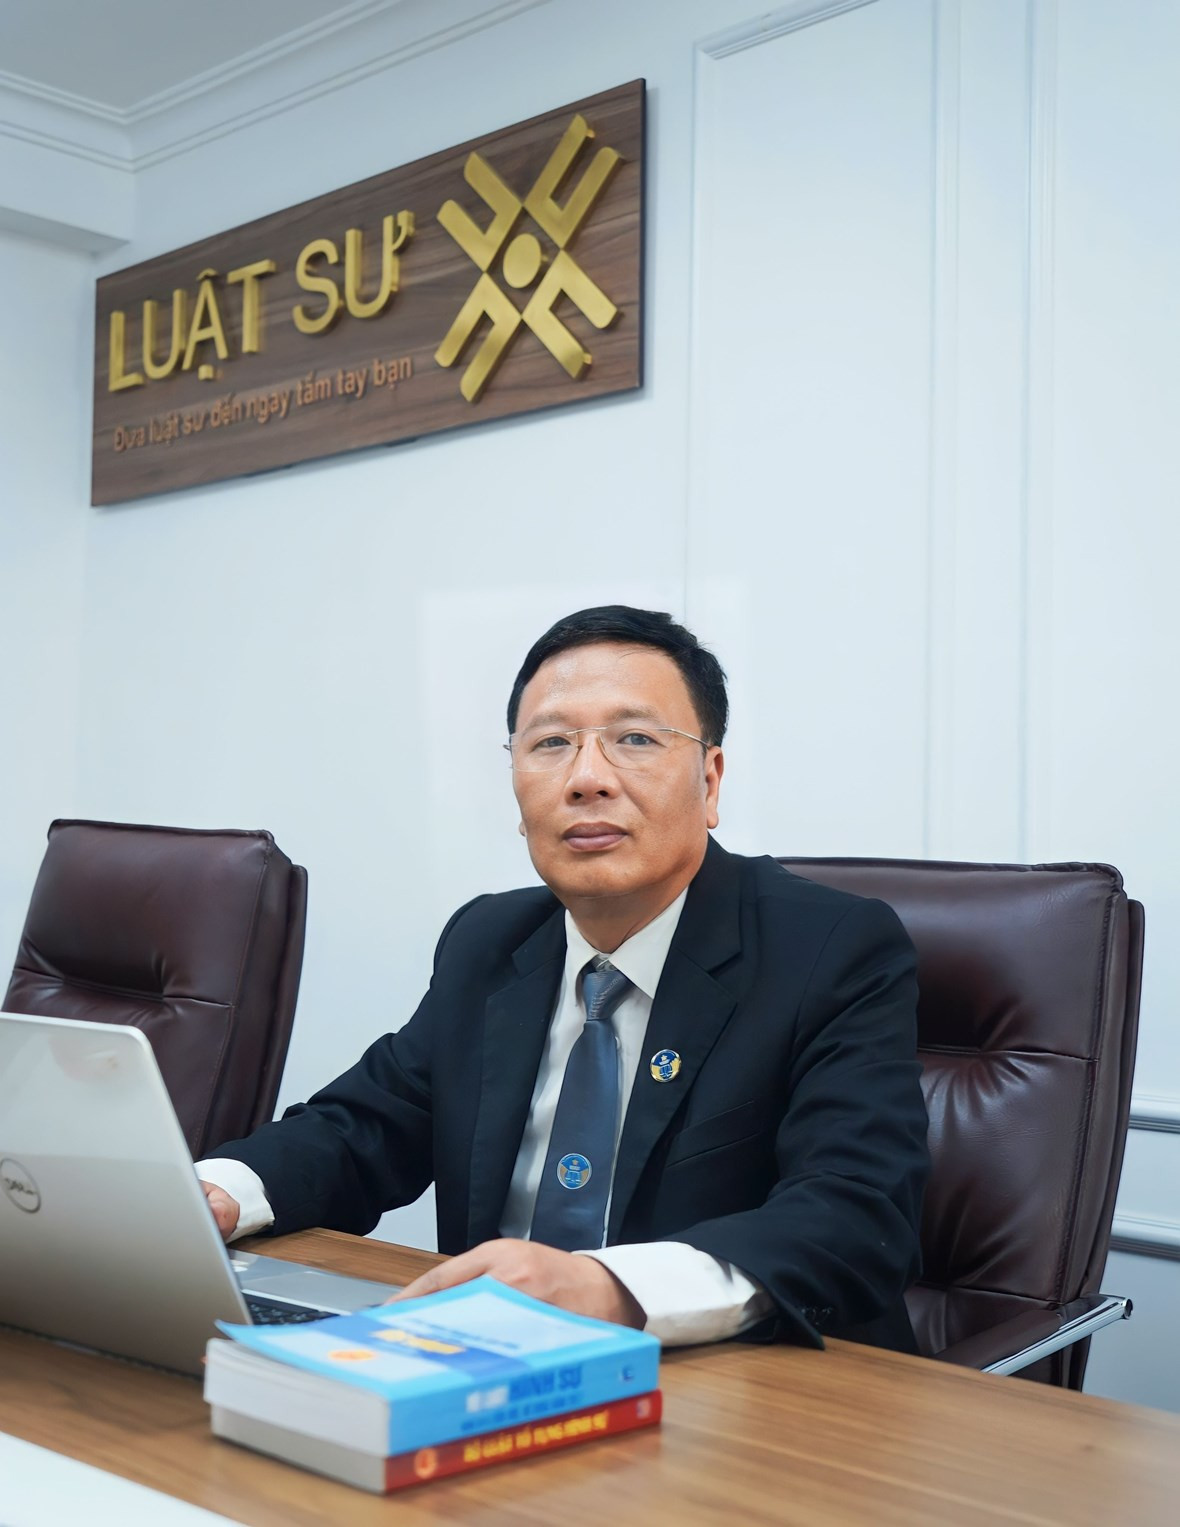 luật sư Bùi Xuân Lai, Công ty Luật TNHH hệ thống dịch vụ pháp lý Luật sư X 